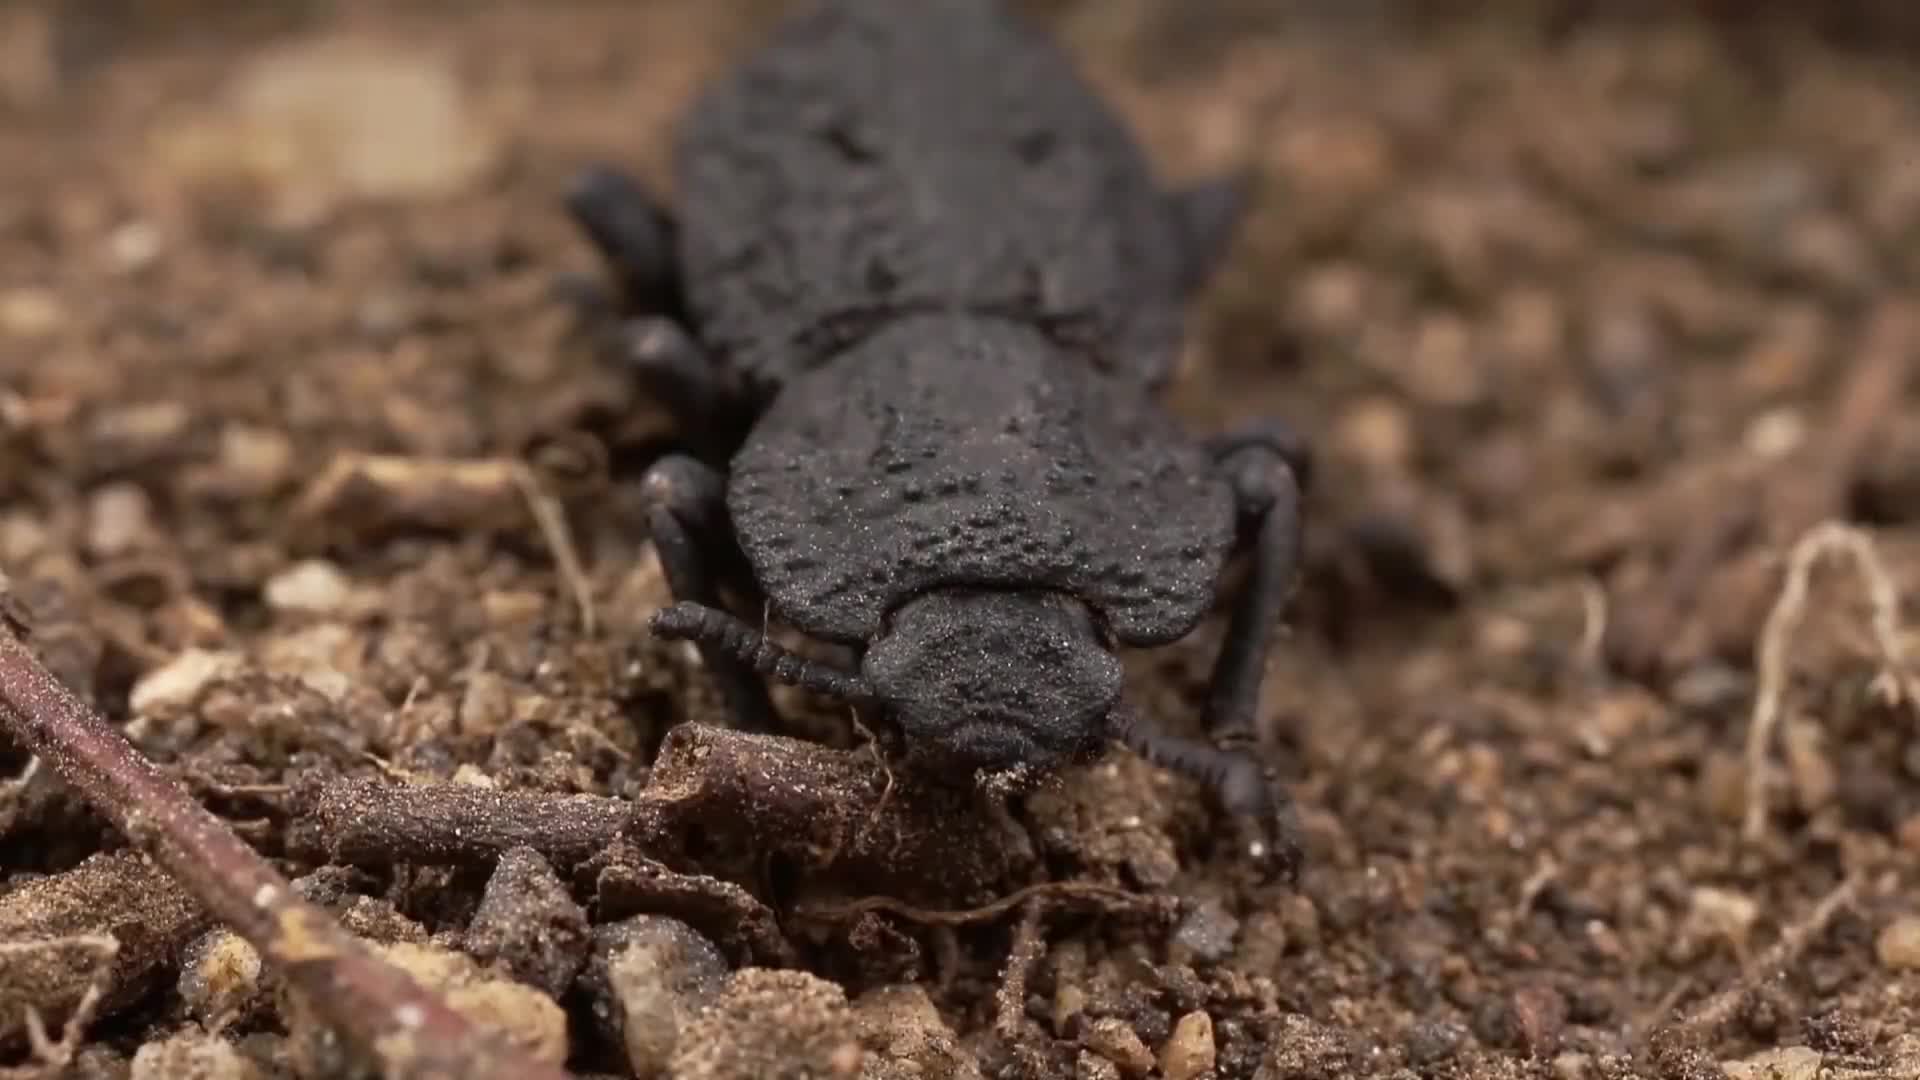 Unzerstörbarer Panzer Käfer: Was wir von diesem Käfer lernen können